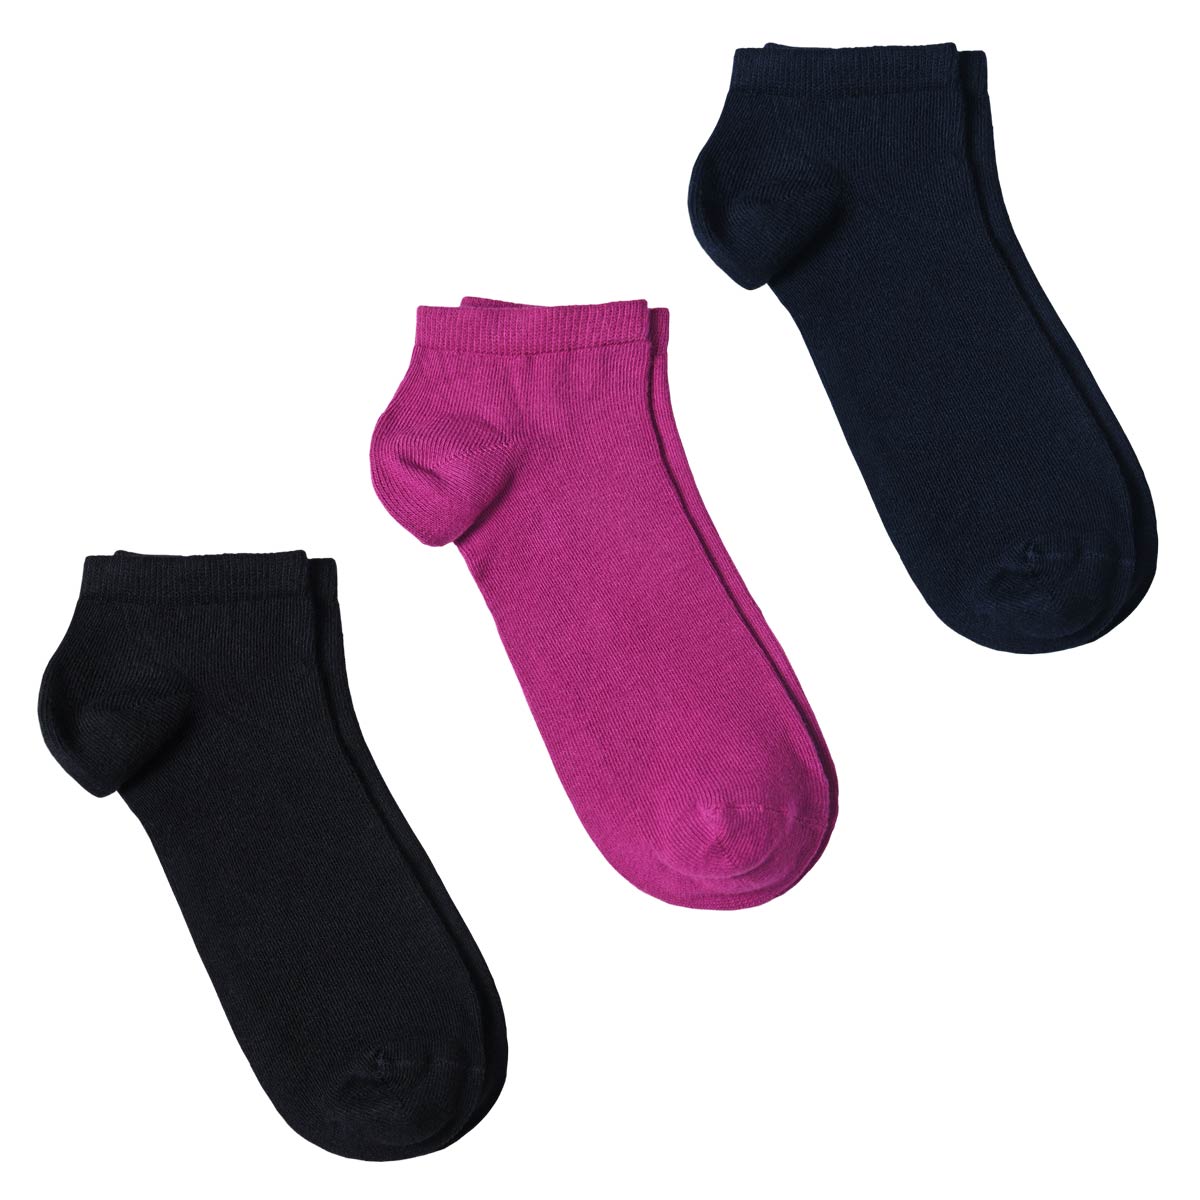 CH-00701_A12-1--_Soquettes-femme-lot-3-paires-assorties-noir-violet-bleu